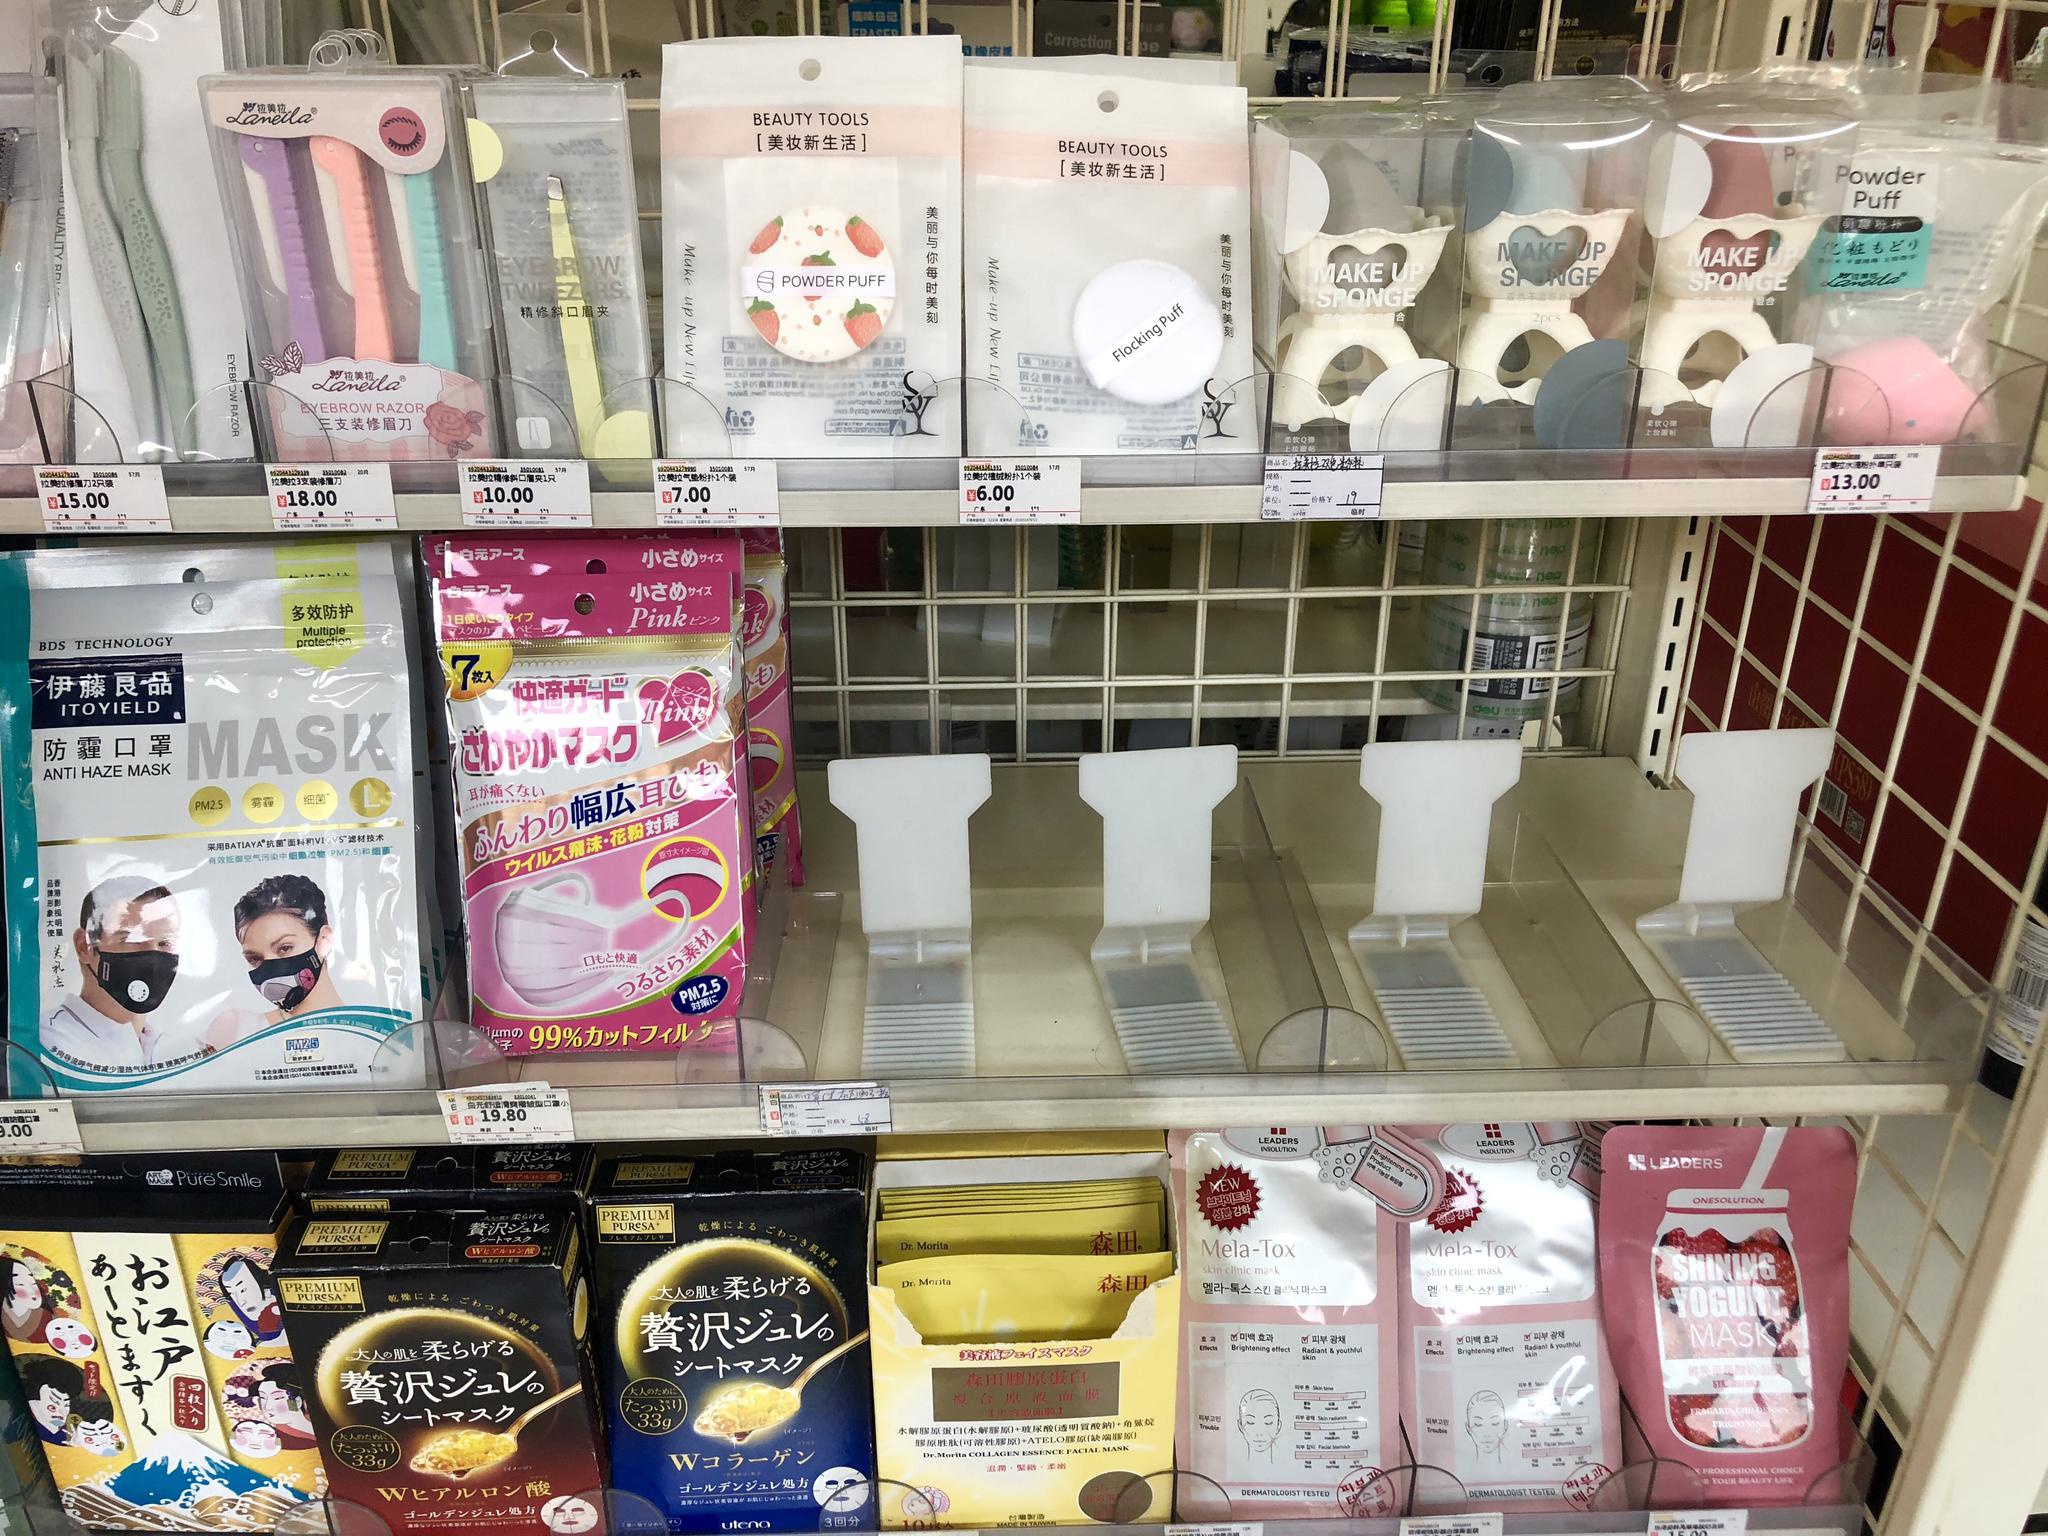 北京磁器口附近的一家便利店内防护口罩销售一空。新京报见习记者 吴淋姝 摄